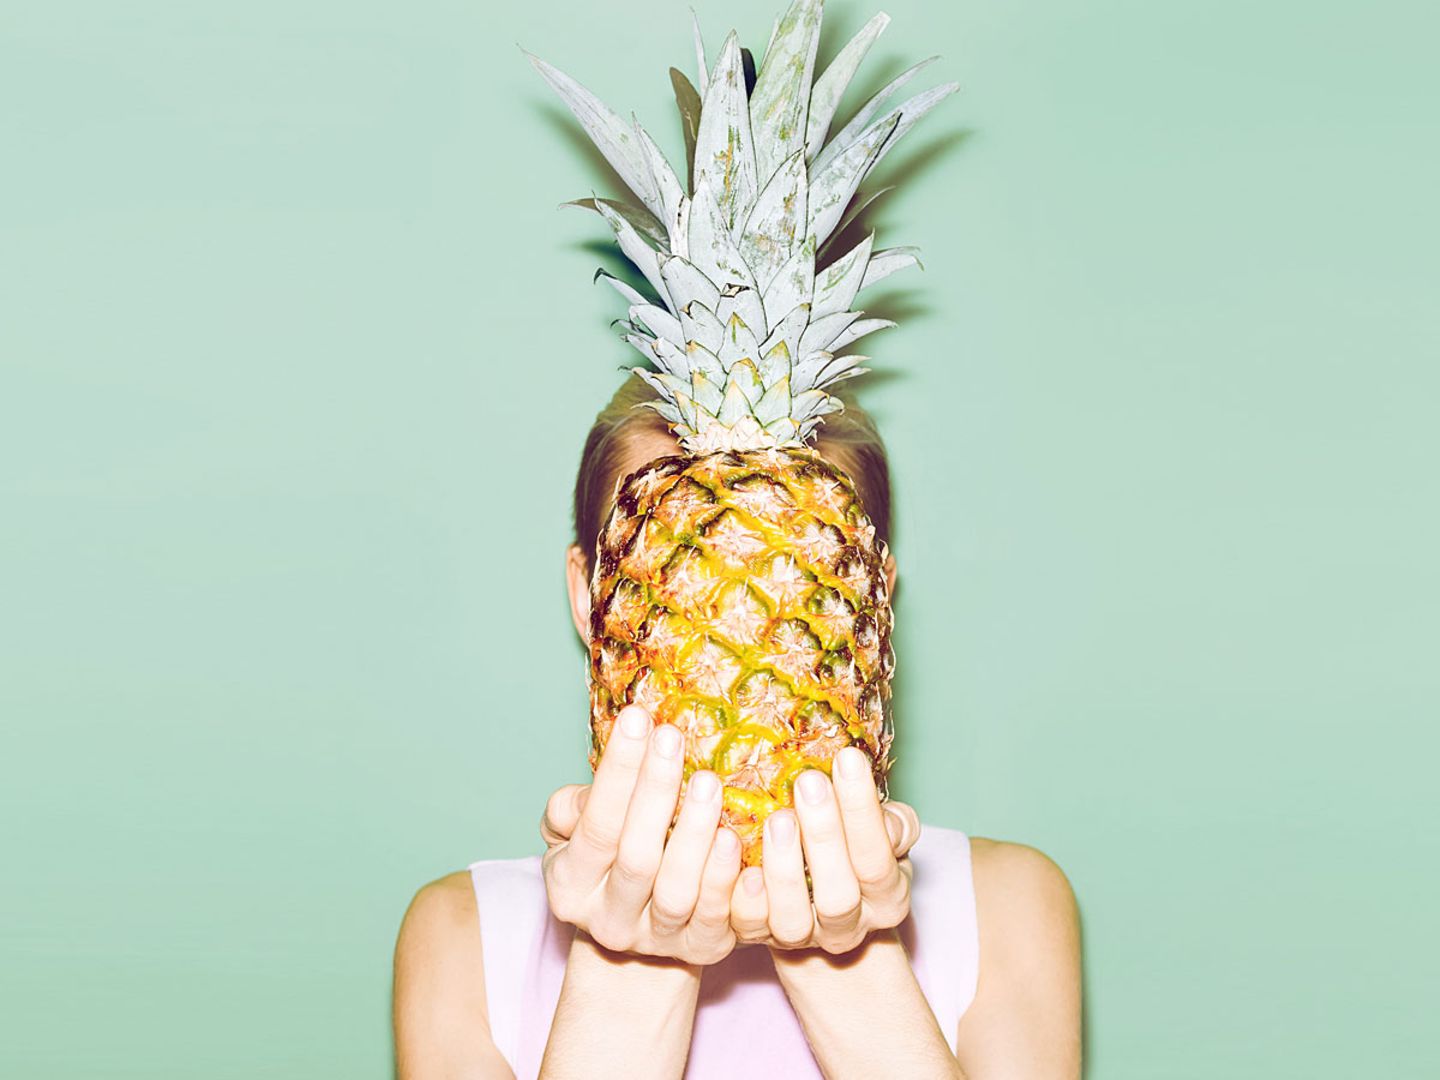 Eine Frau hält sich eine Ananas vor das Gesicht